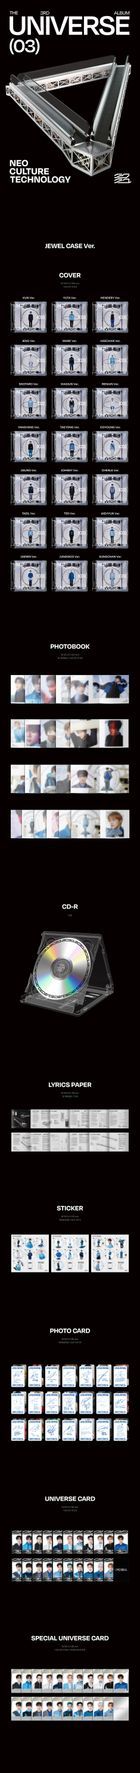 NCT Vol. 3 - Universe (Jewel Case Version) (Tae Il Version)